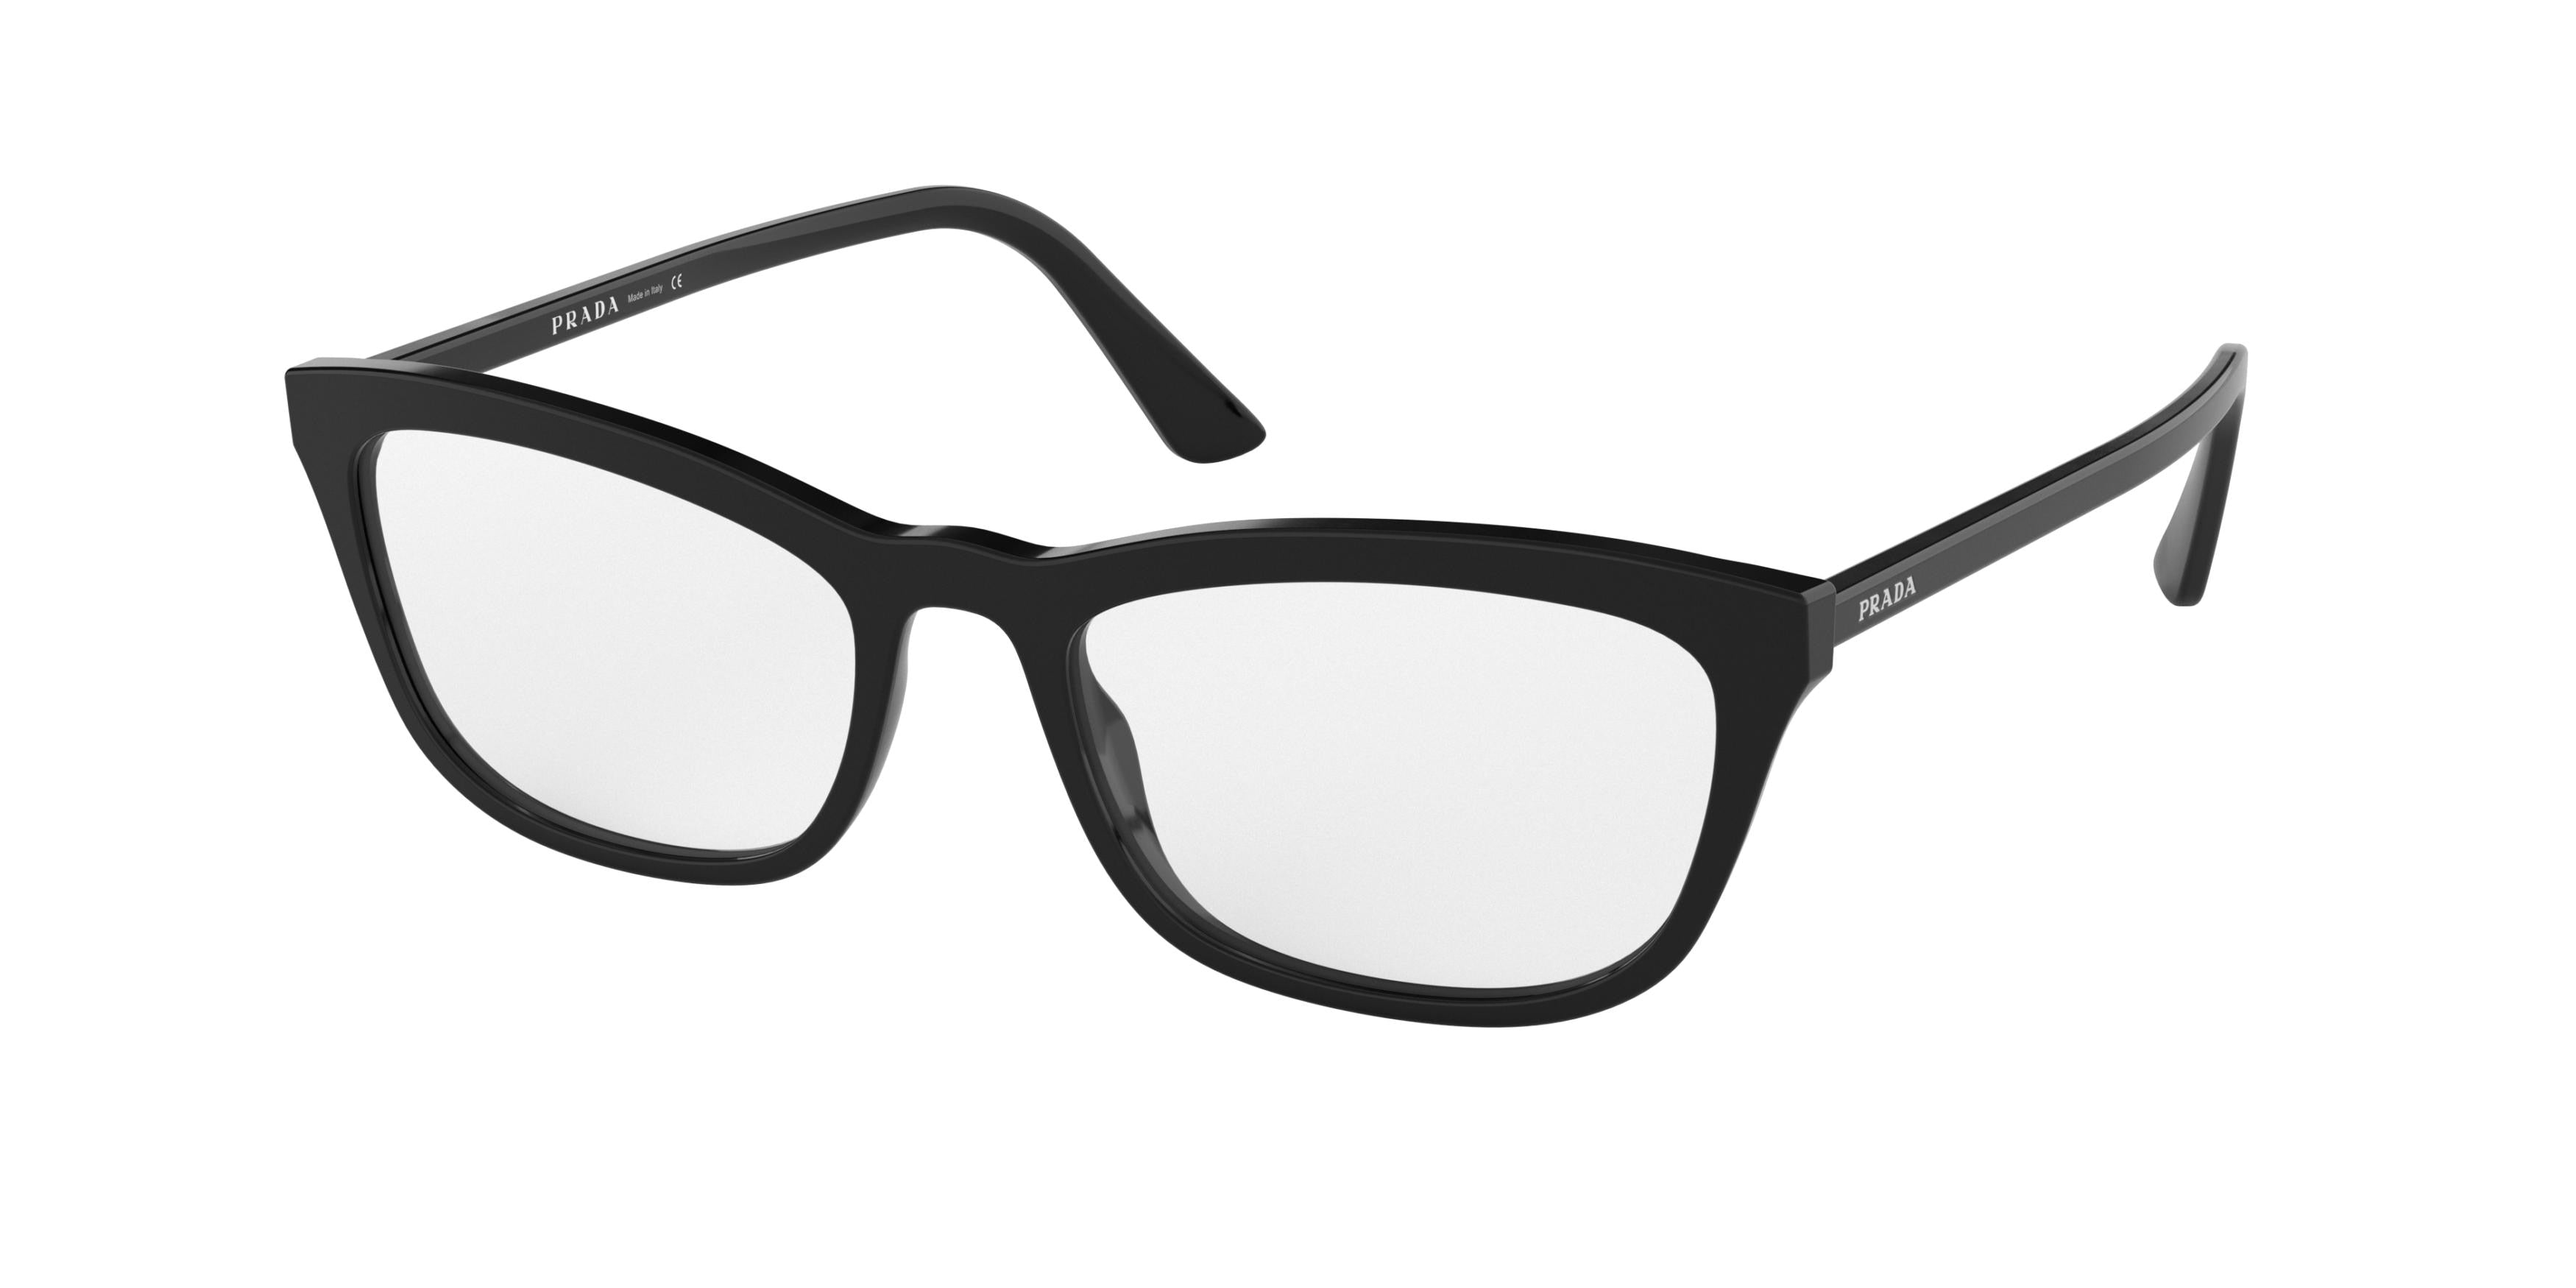 Prada CATWALK PR10VV Pillow Eyeglasses  1AB1O1-Black 54-145-18 - Color Map Black